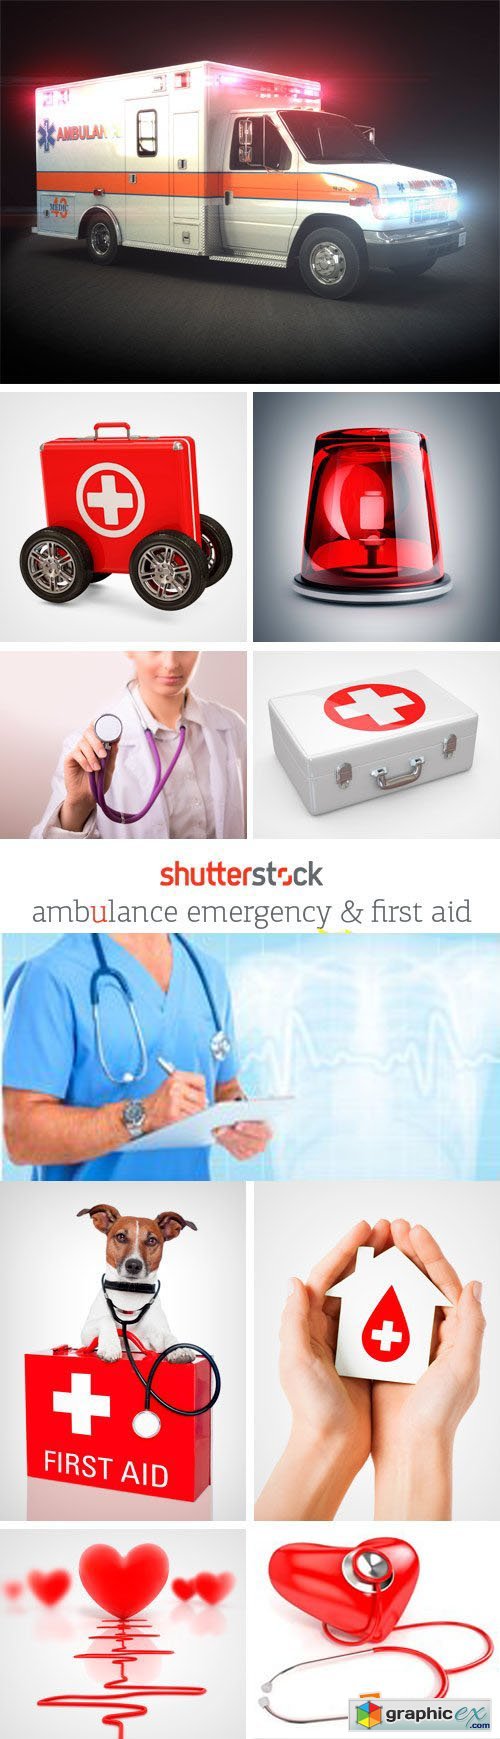 Amazing SS - Ambulance Emergency & First Aid, 25xJPGs